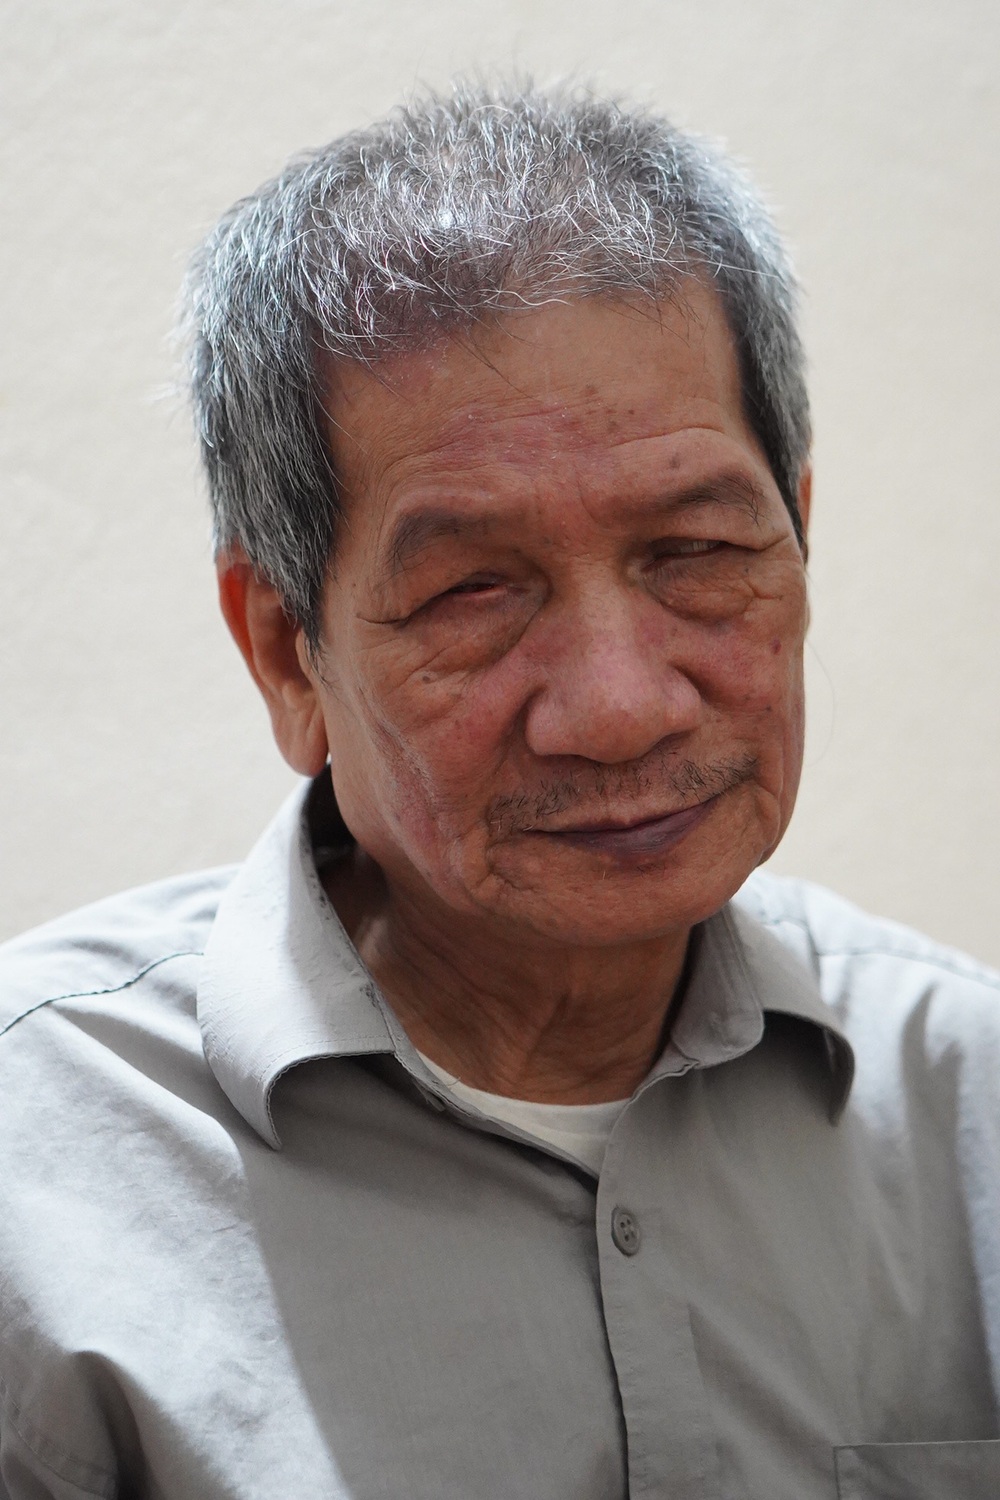 Vợ chồng mù bán chổi đót ở Hà Nội: Câu chuyện mất đi ánh sáng và mối tình bền chặt 30 năm - Ảnh 2.